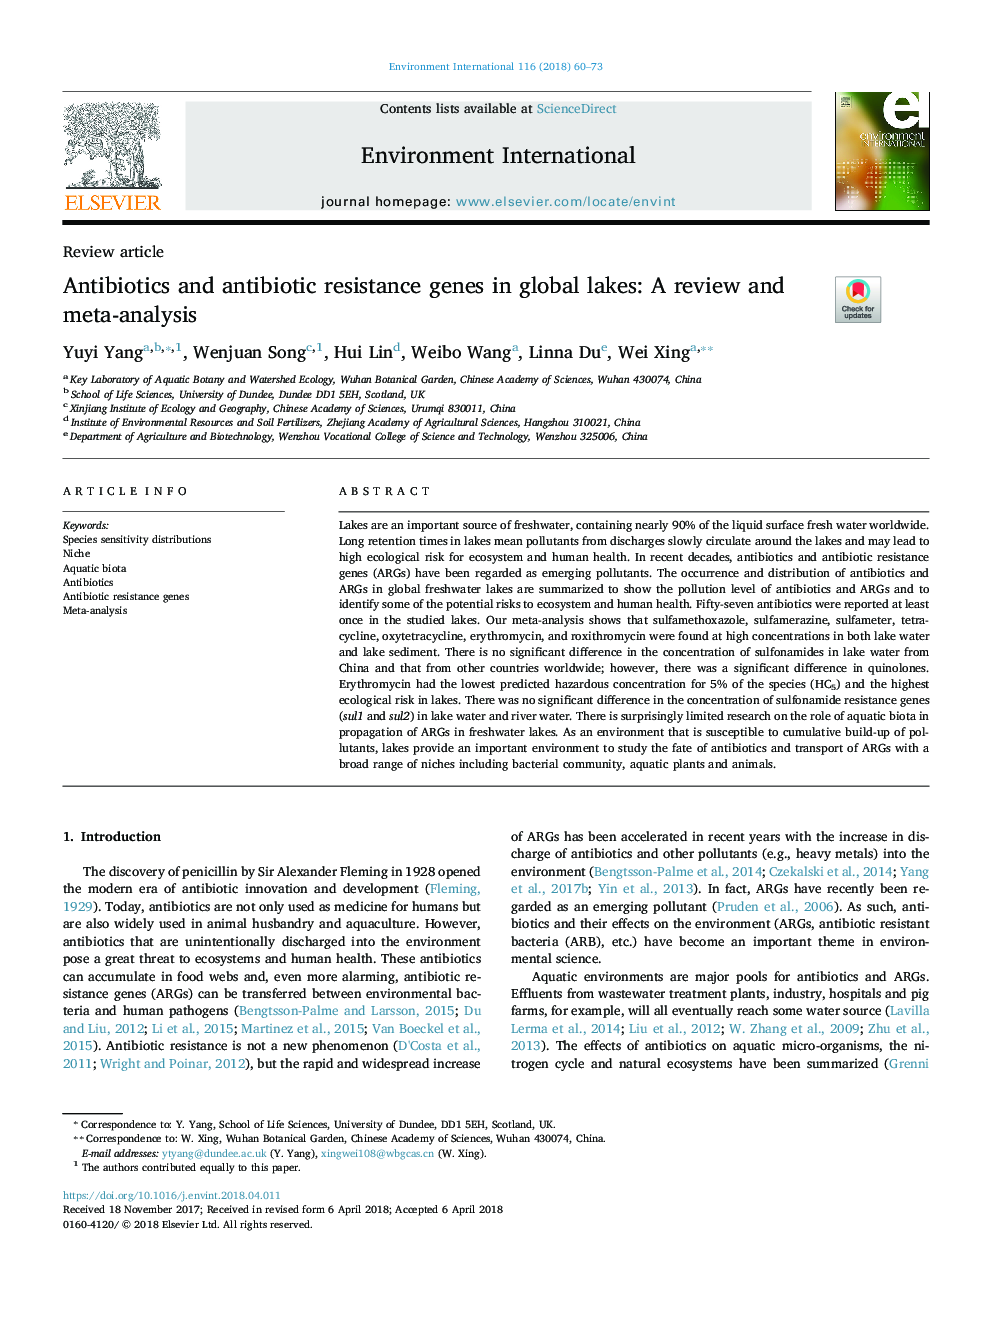 آنتی بیوتیکها و ژنهای مقاومت آنتی بیوتیک در دریاچههای جهانی: بررسی و متاآنالیز 